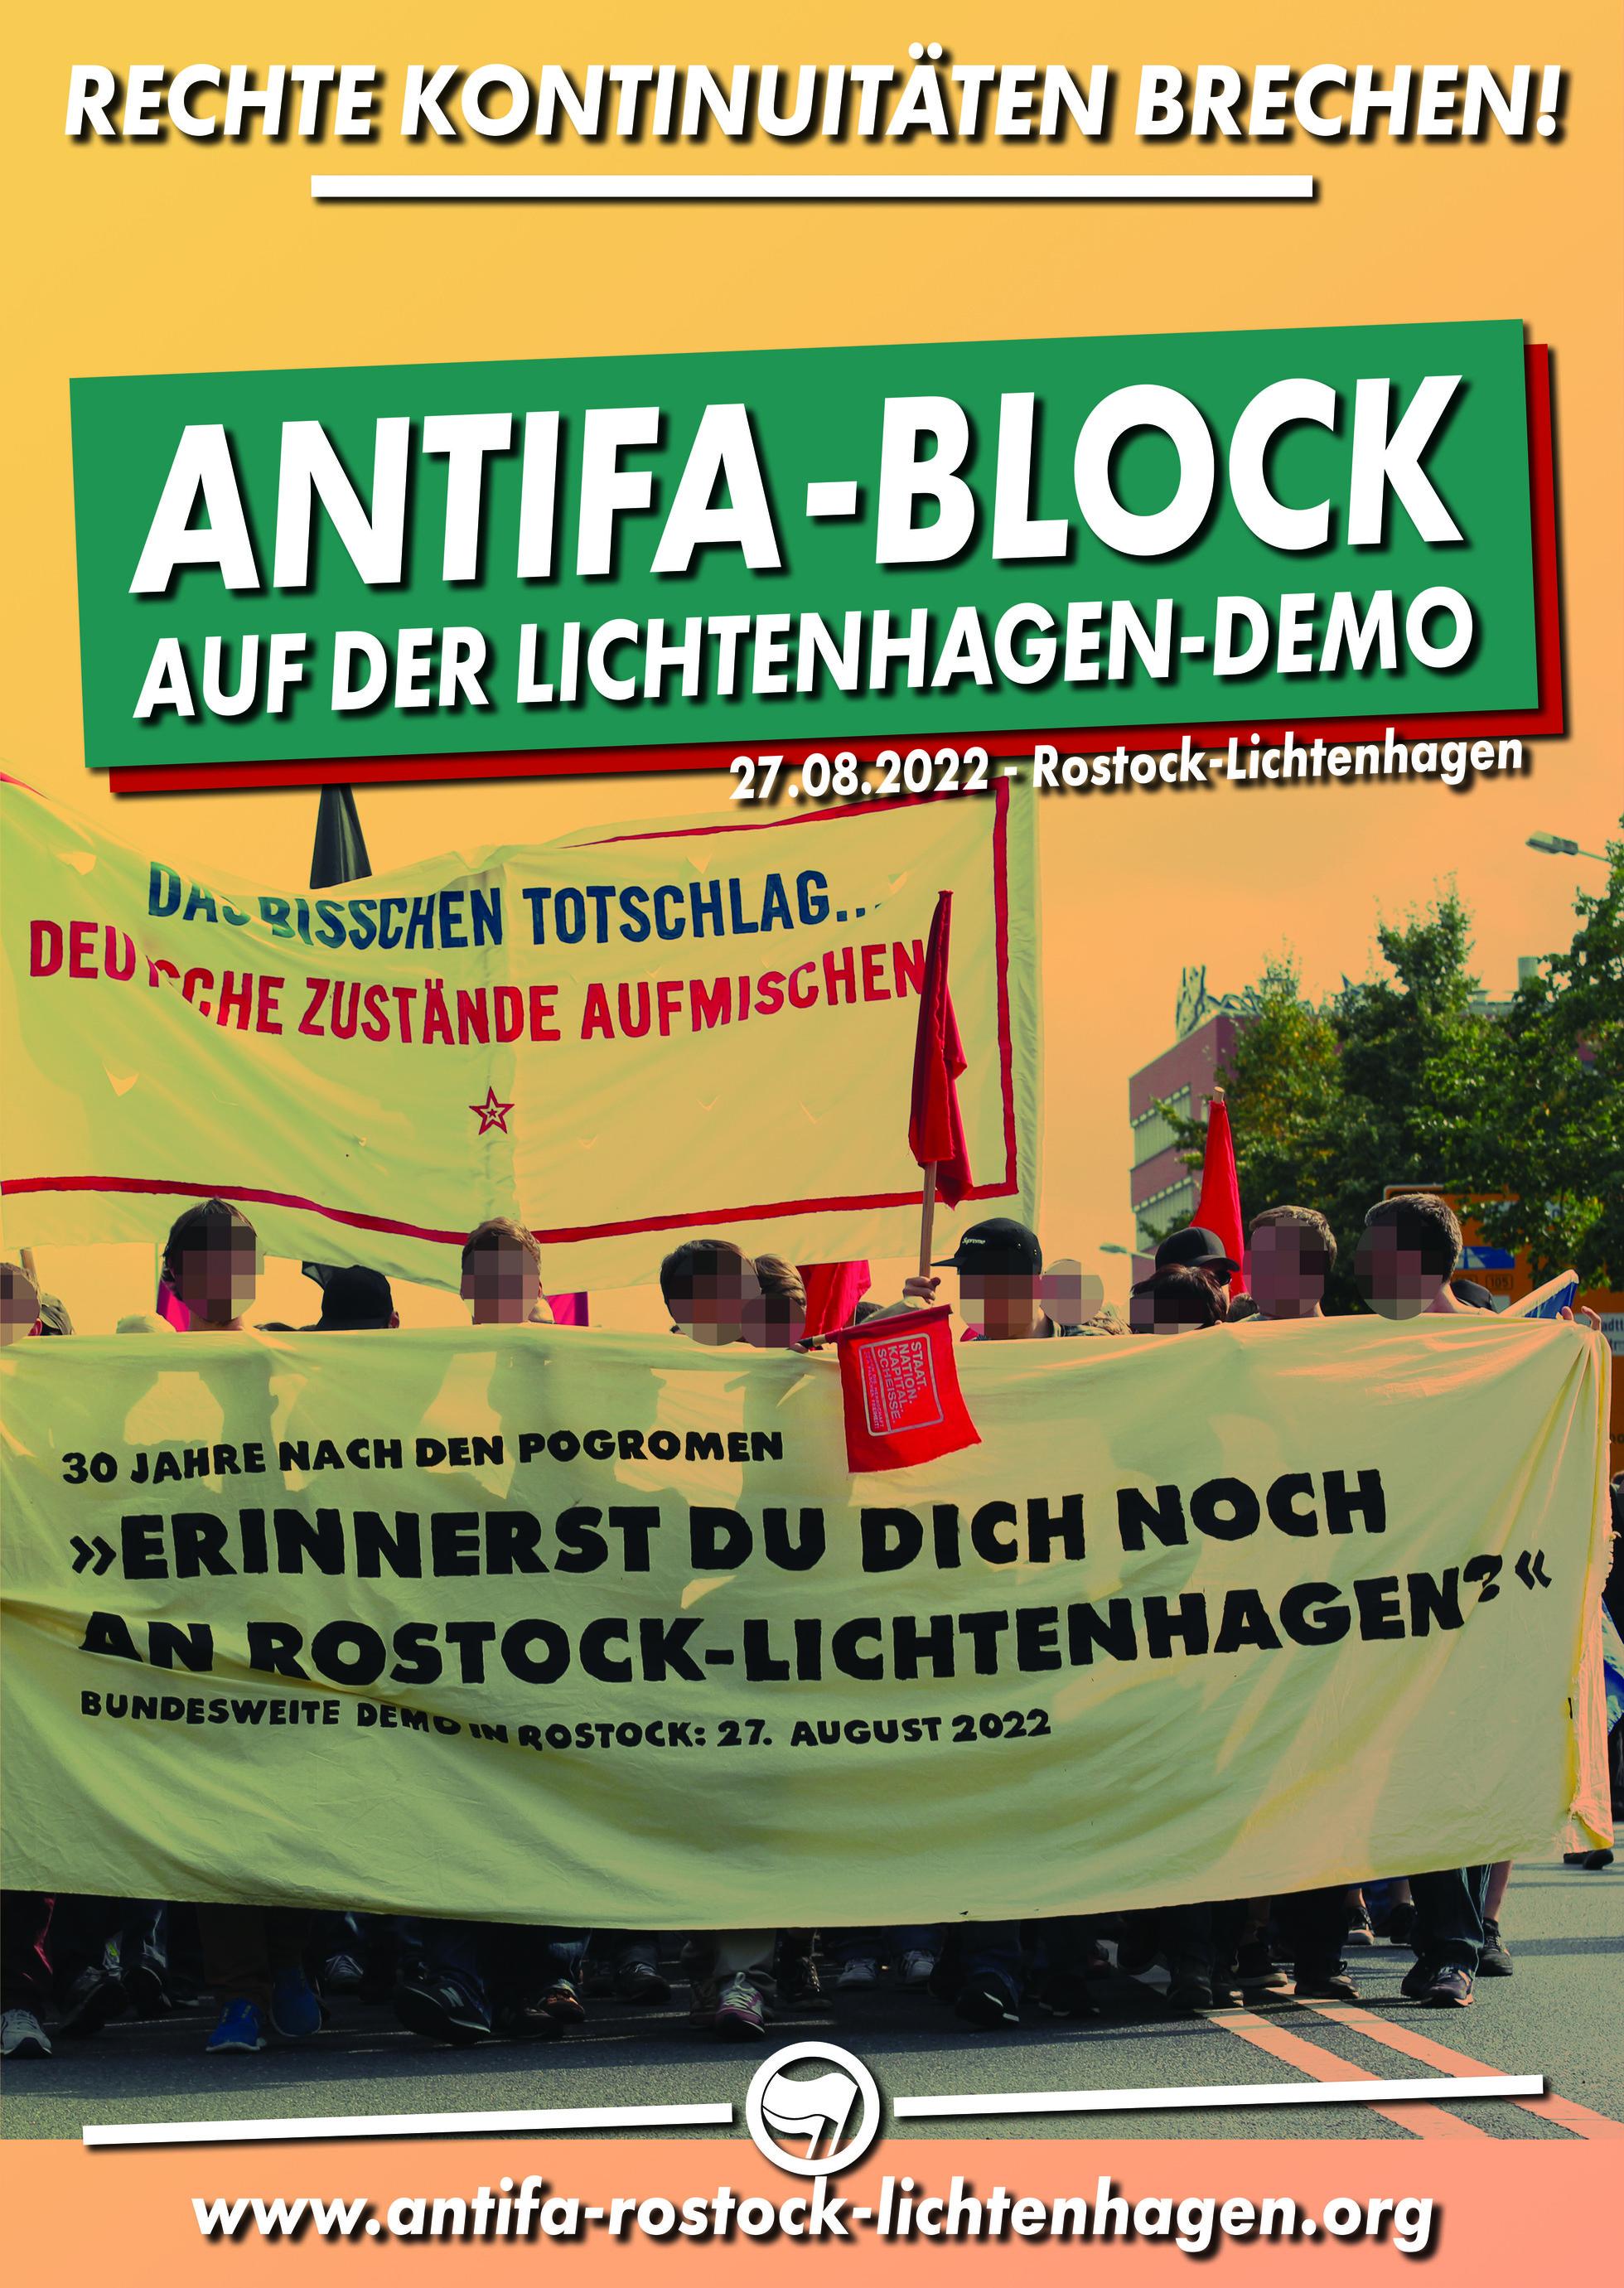 Join the Antifa block on the Lichtenhagen-Memorial-Demonstration in Rostock on 27. August 2022.